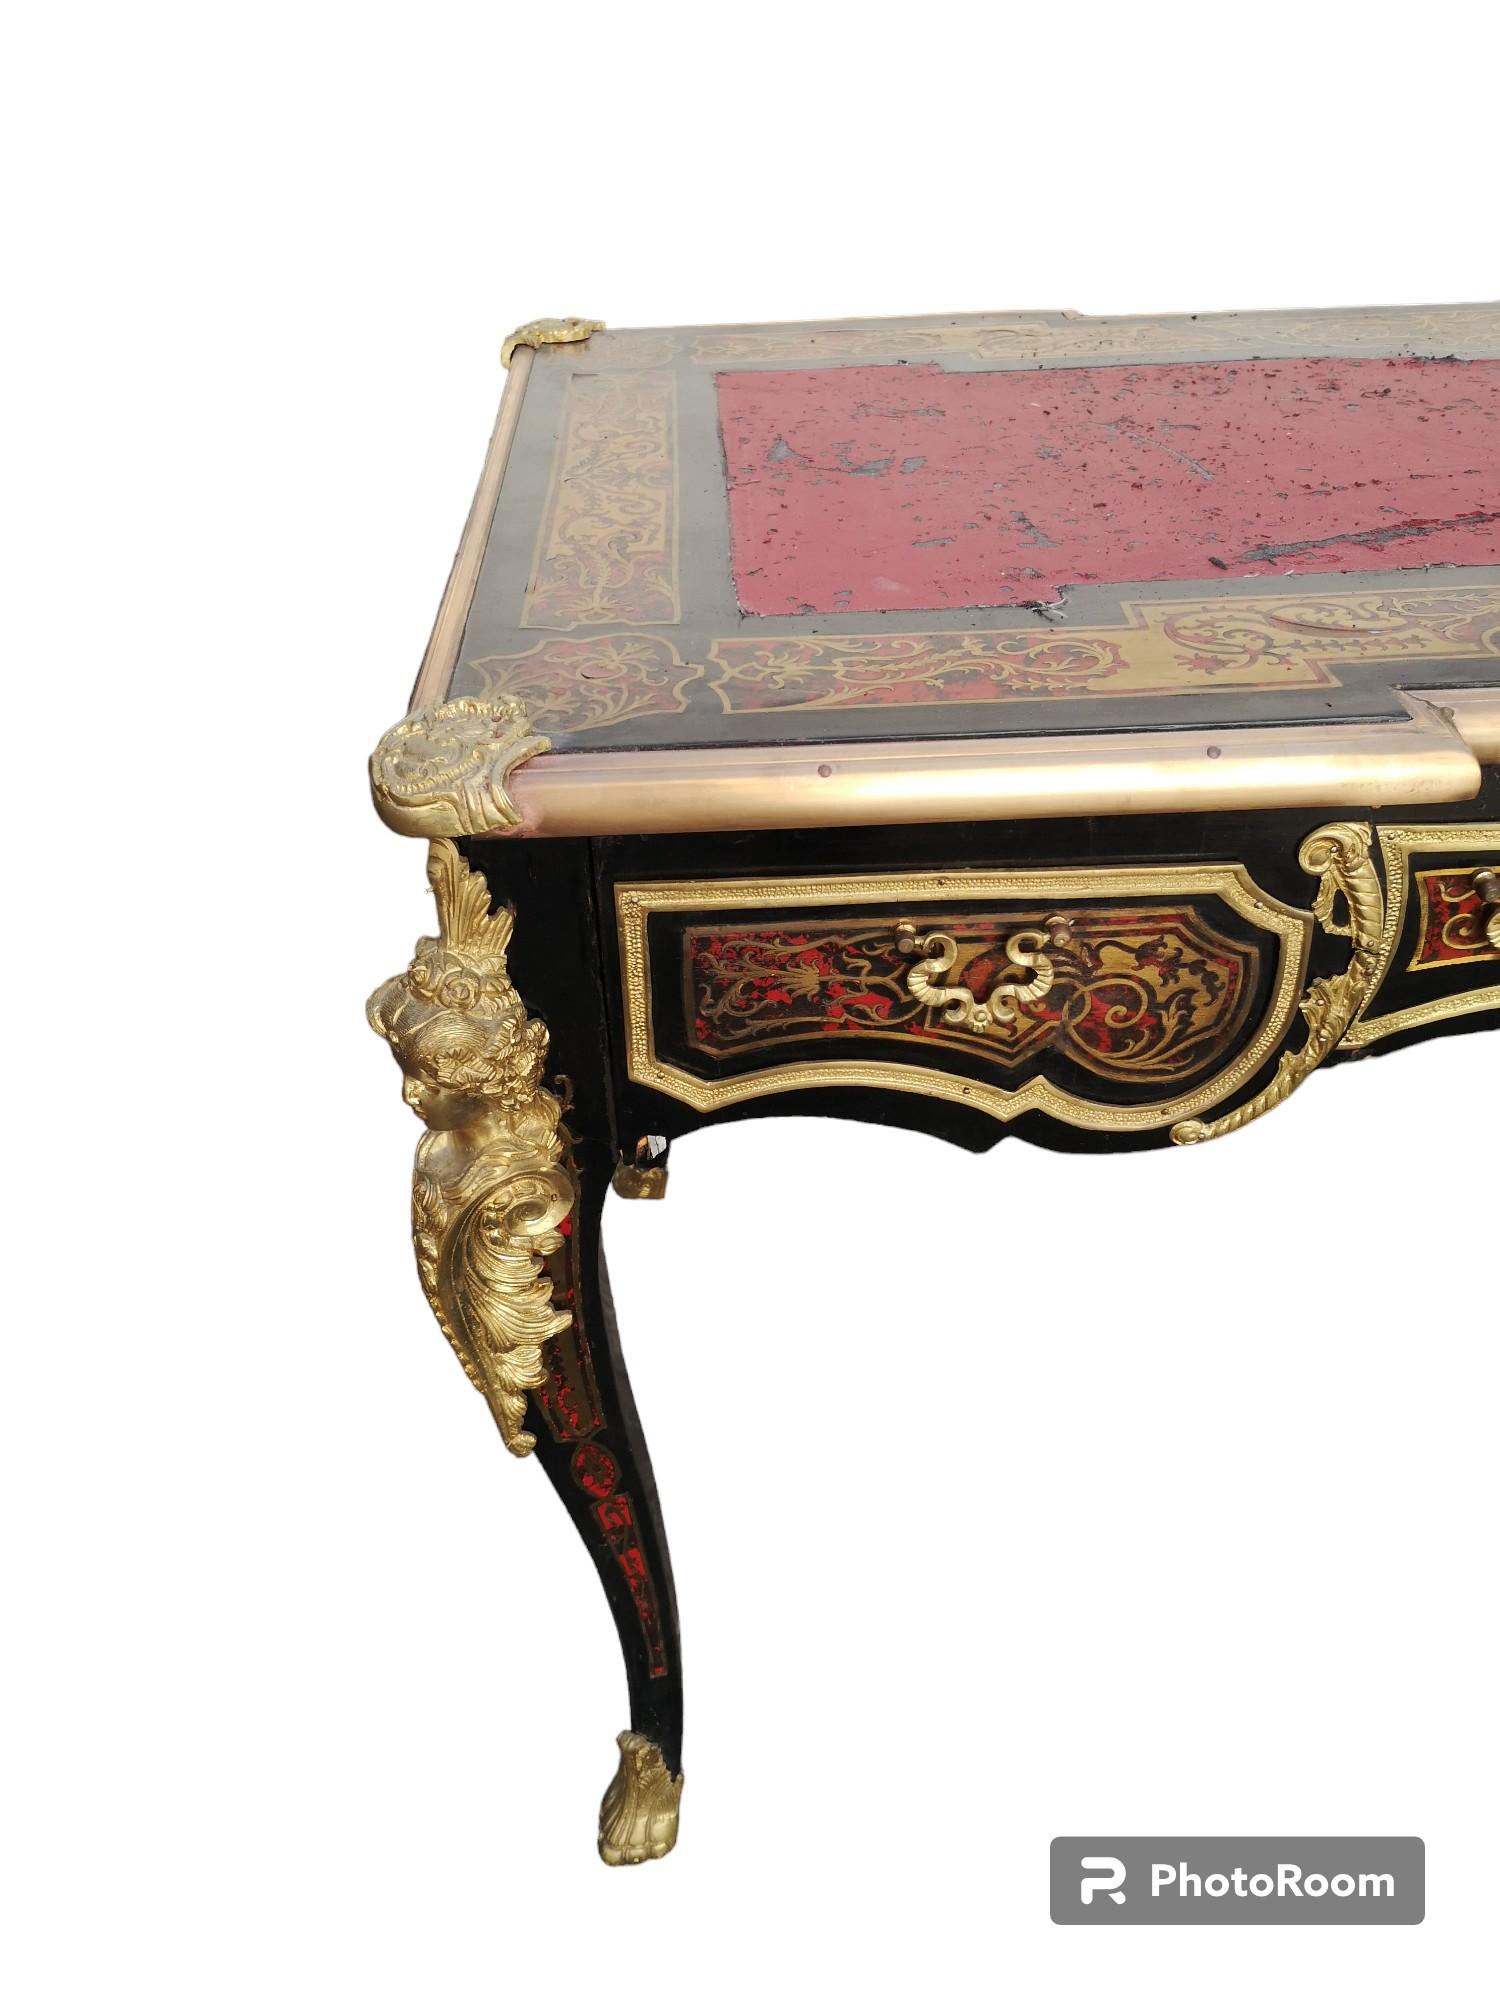 Escritorio vintage de estilo Luis XV  con adornos e incrustaciones
madera lacada y bronces dorados, con 3 cajones espaciosos.
En buen estado, para reescribir.